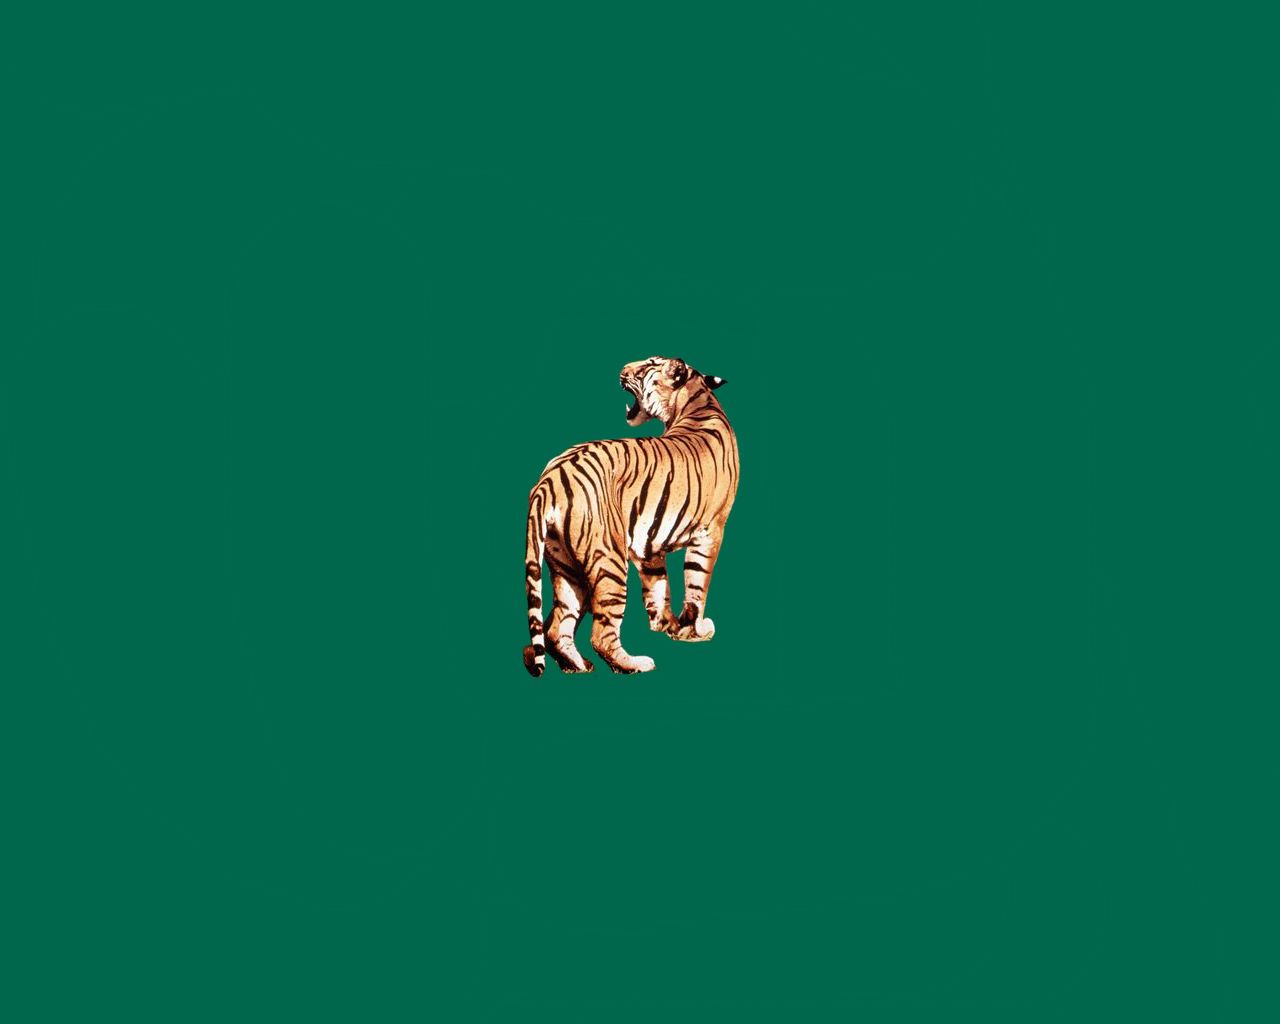 Green Tiger Wallpaper. Tiger wallpaper, Wallpaper, Green wallpaper